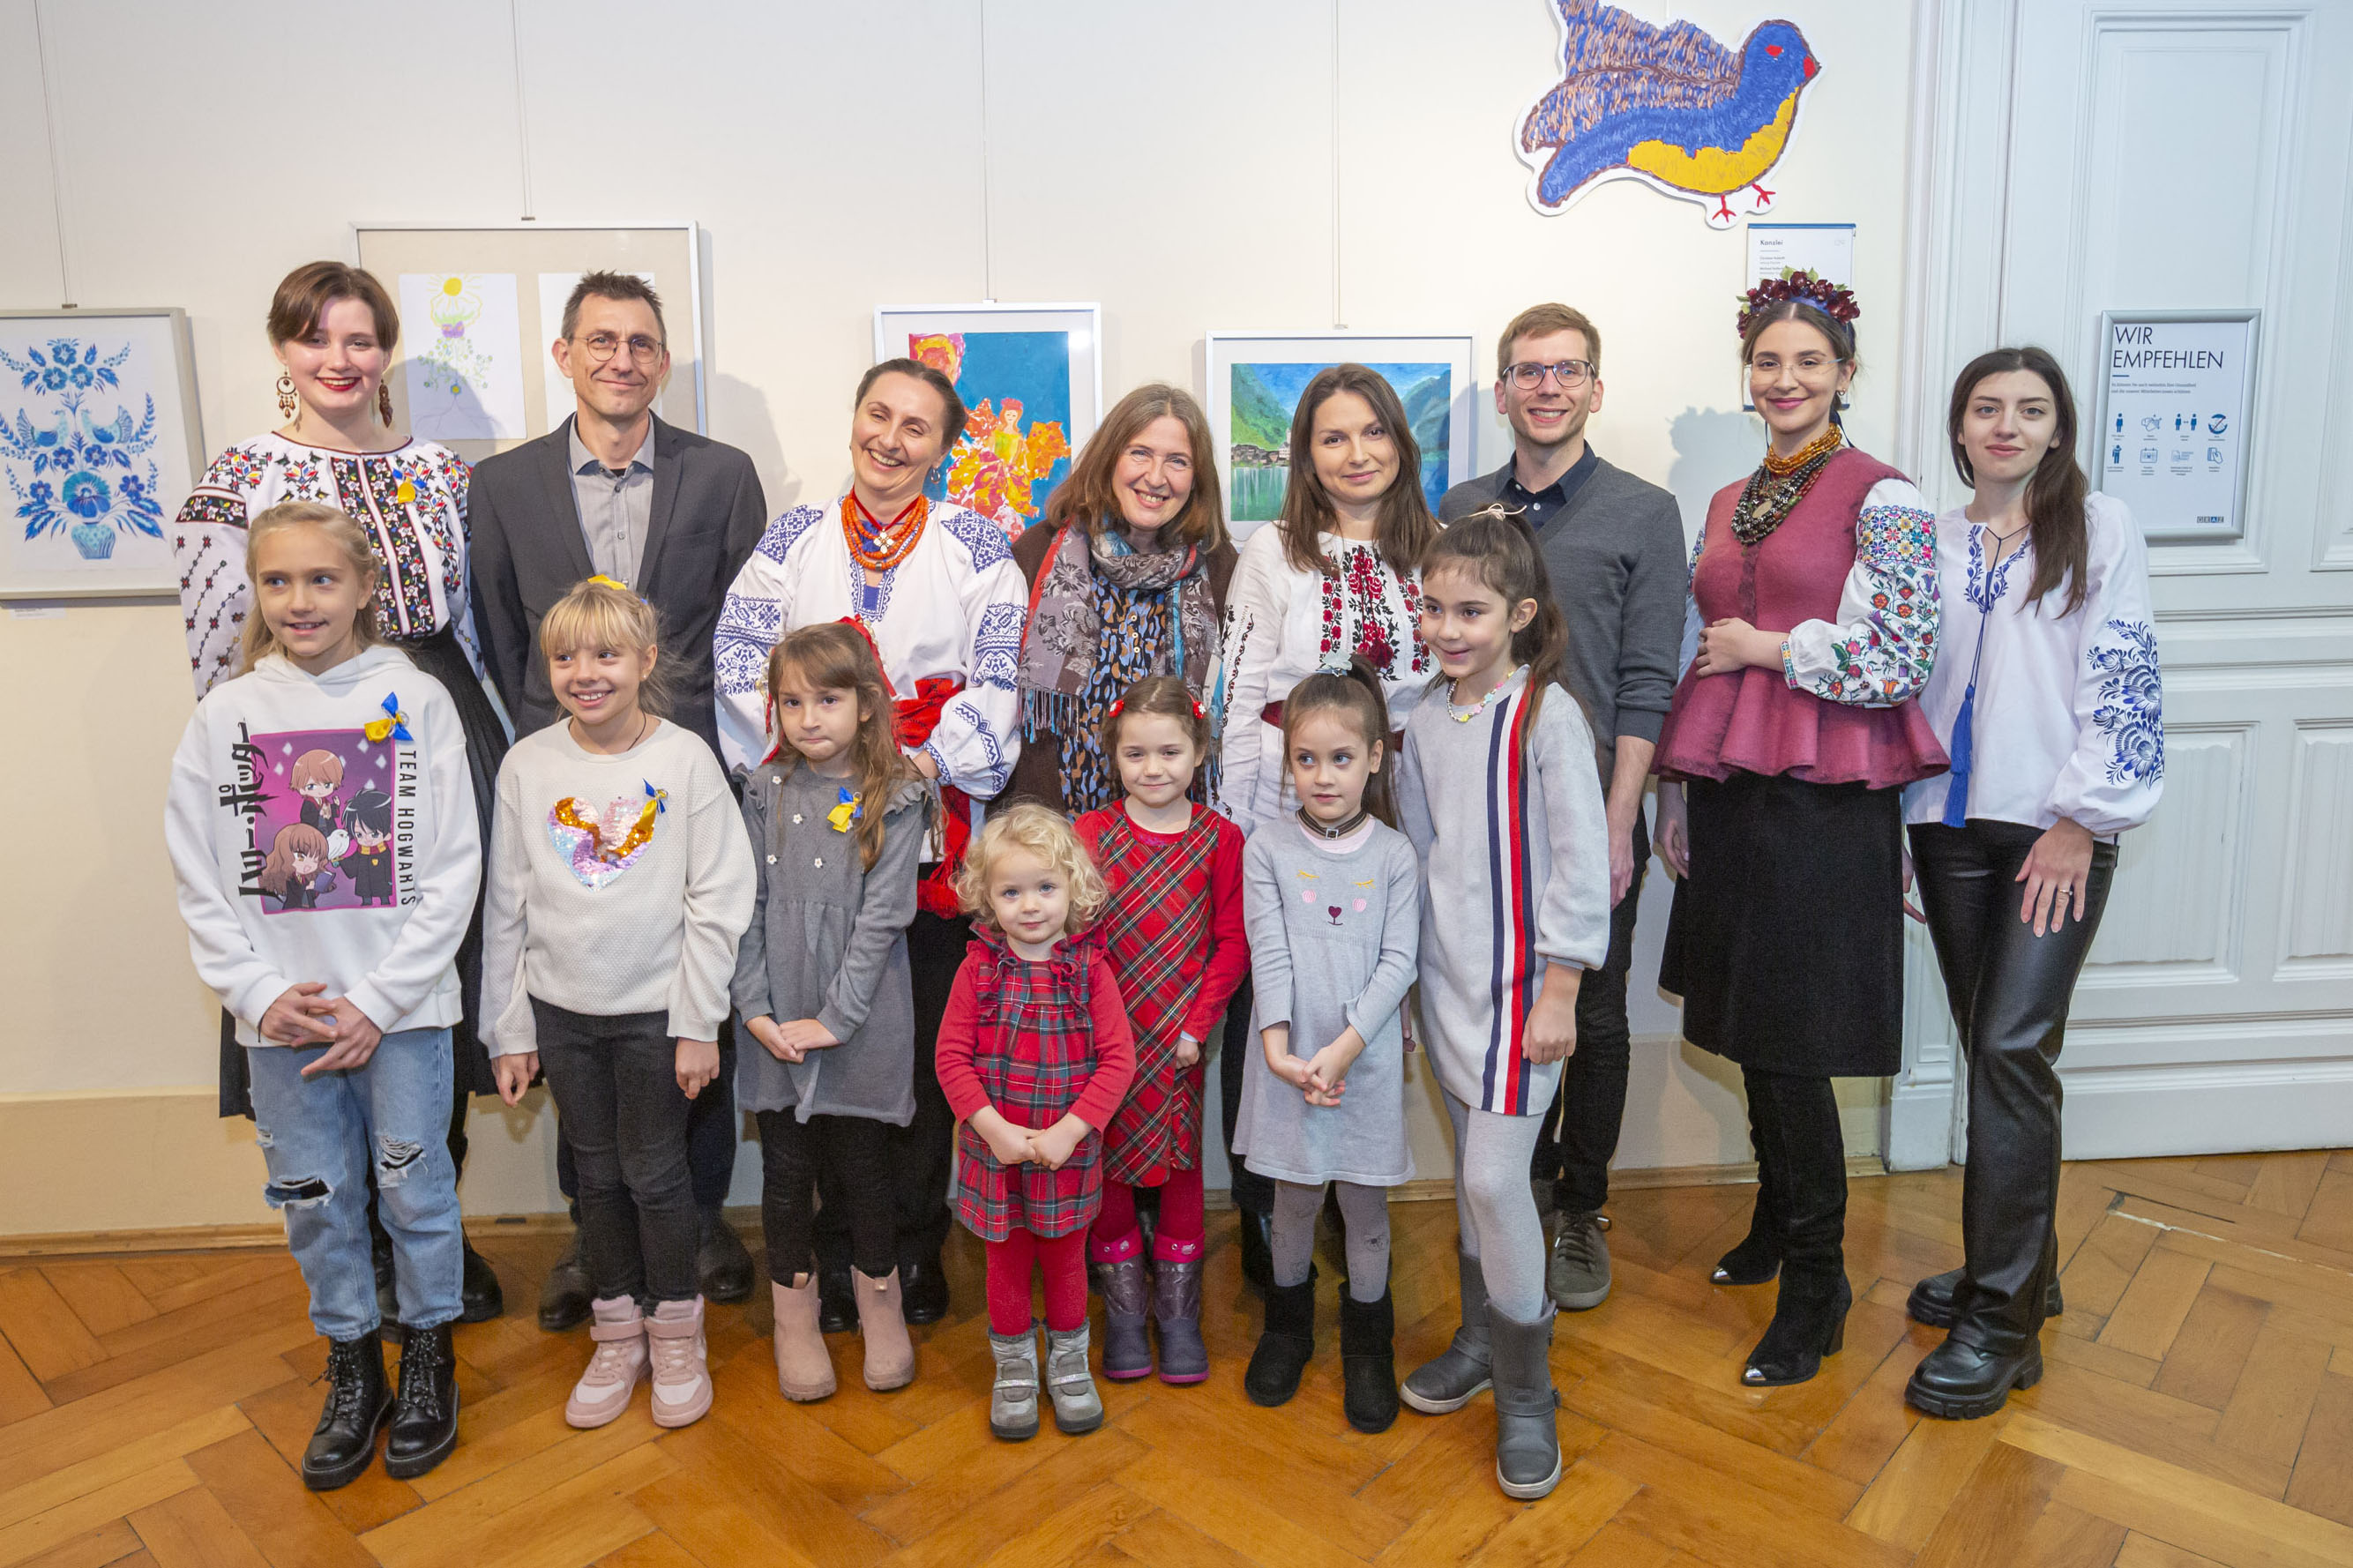 Gruppenbild mit Ukrainischen Kulturvereinsmitglieder, Steirischer Kulturvermittlung sowie Bürgermeisterin Elke Kahr und Stadtrat Robert Krotzer.